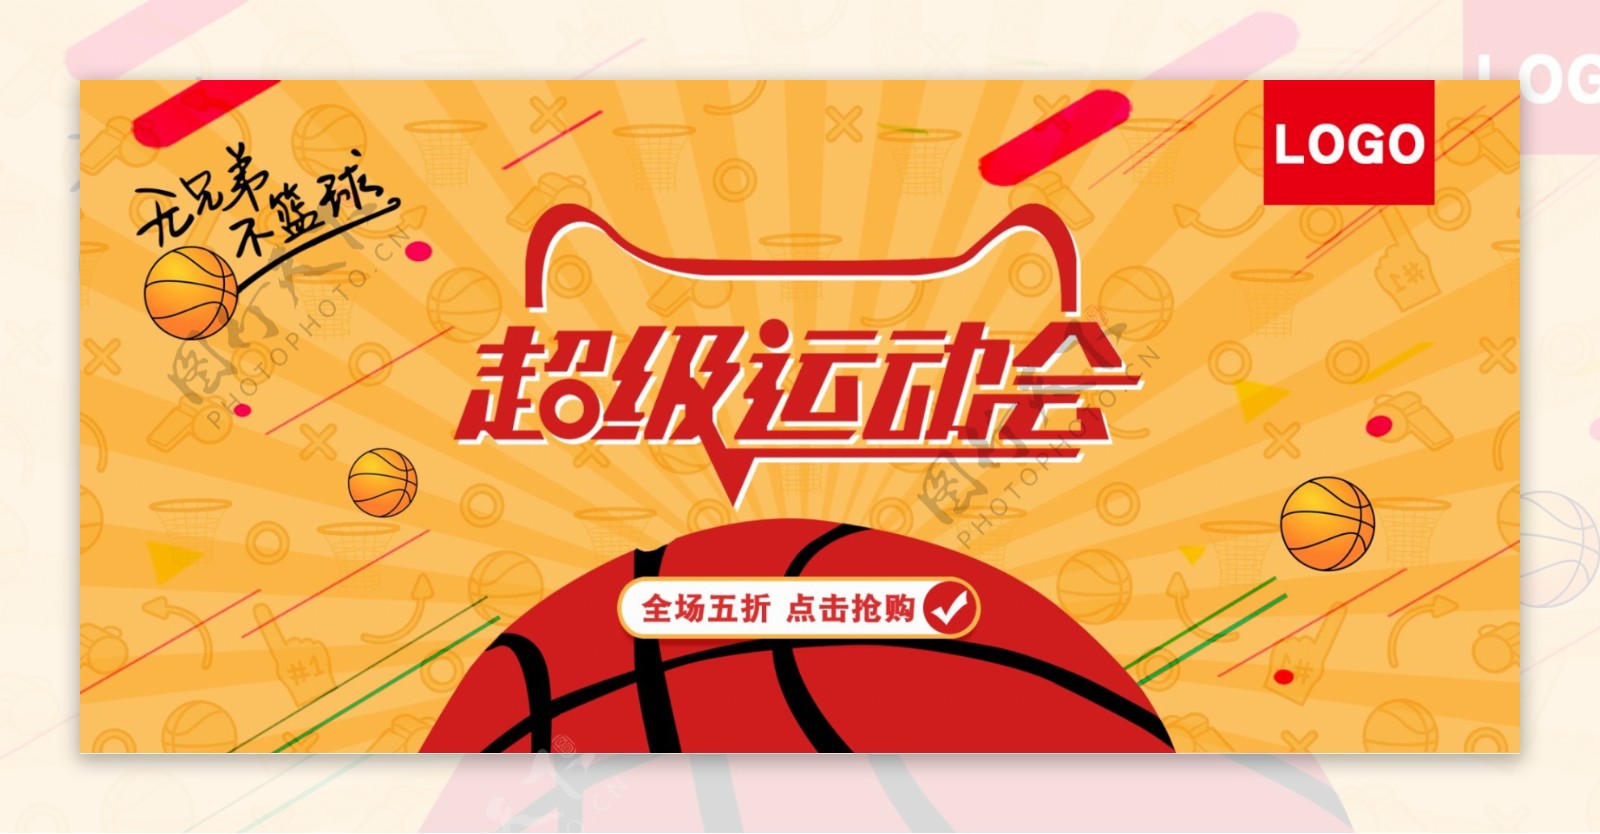 天猫超级运动会橙红色渐变卡通篮球促销海报